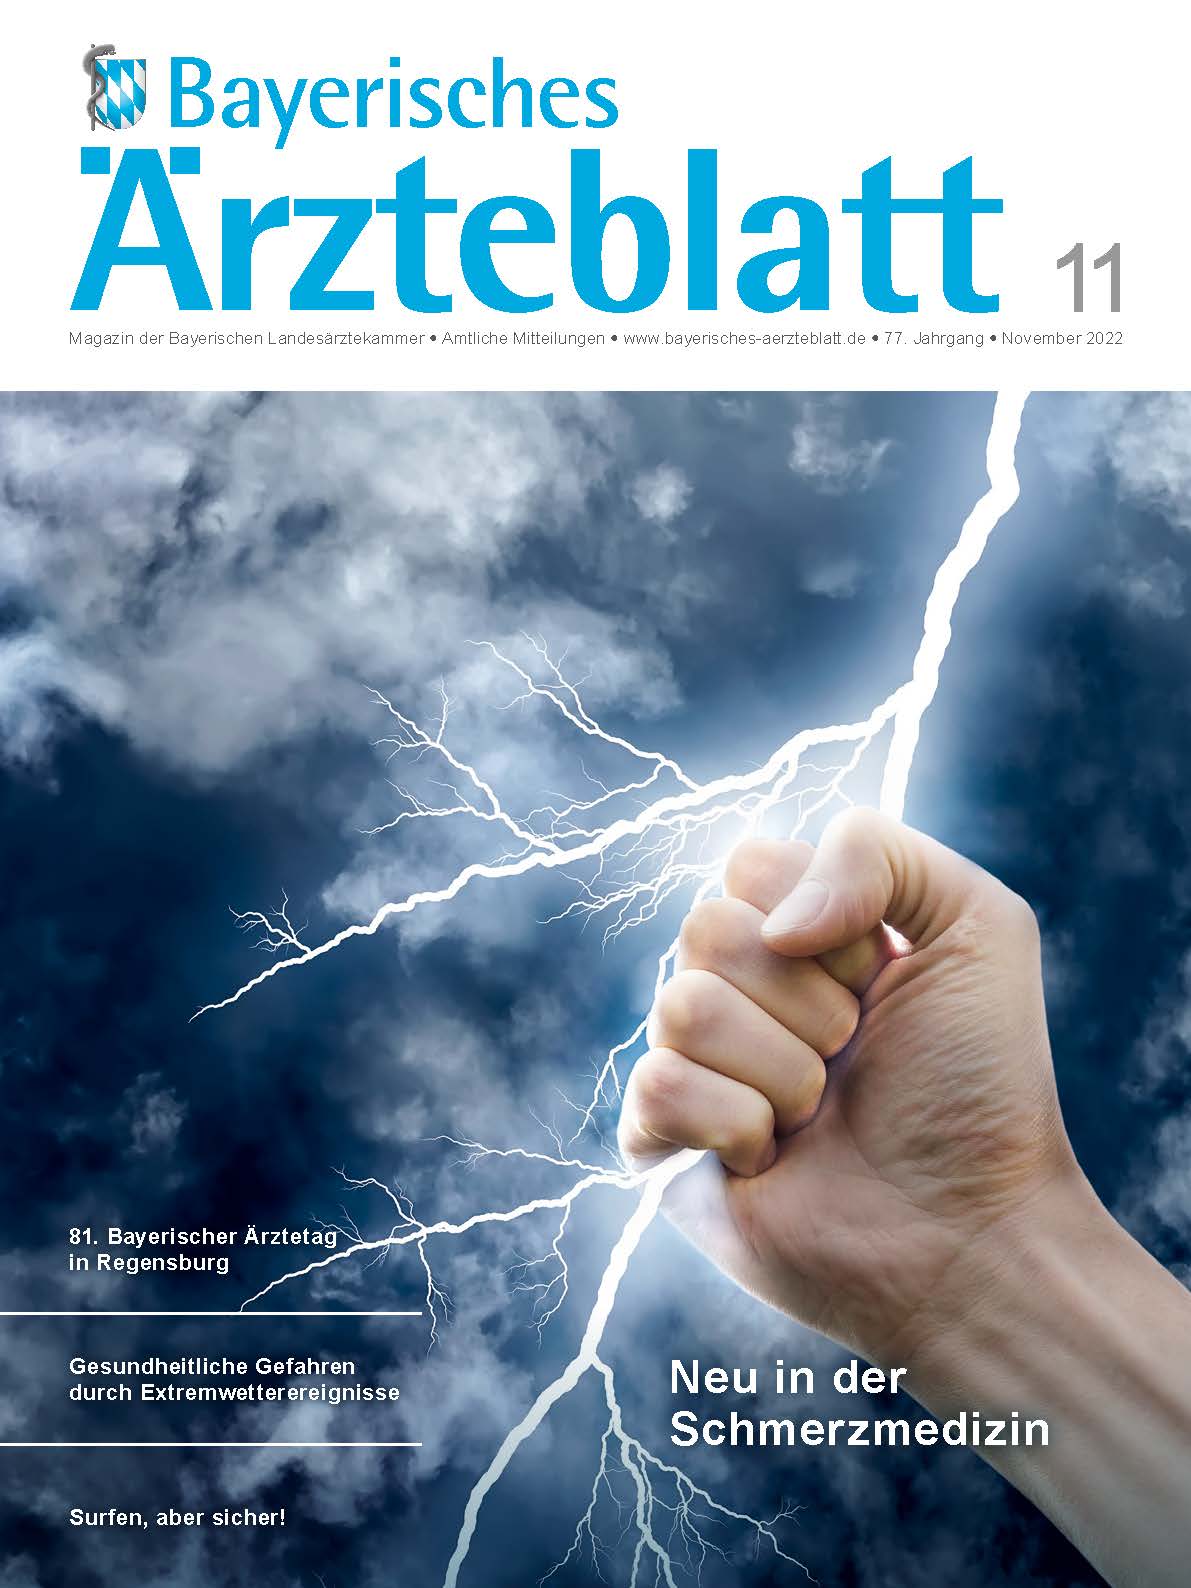 Bayerisches Ärzteblatt Nr. 9/2014